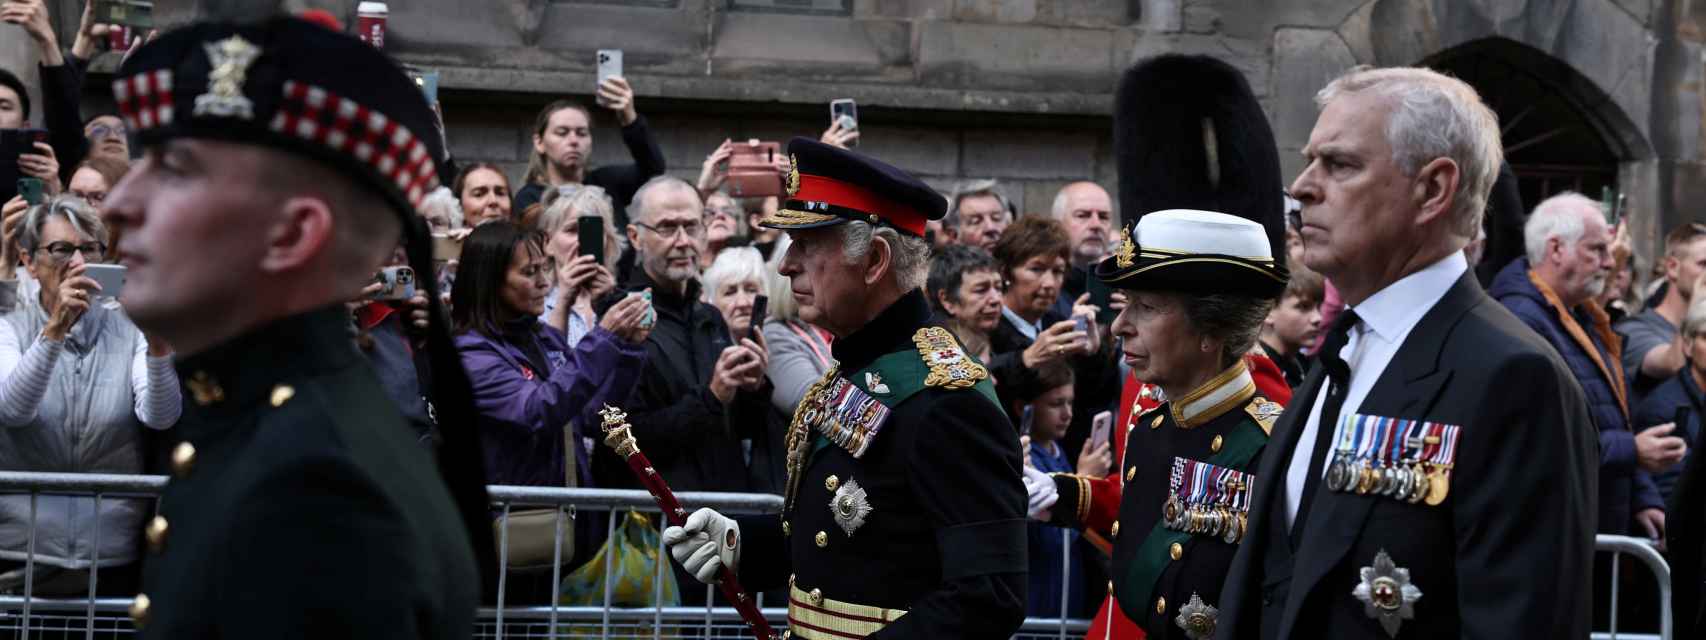 El rey Carlos III junto al príncipe Andrés siguiendo en Edimburgo el cortejo fúnebre de la reina Isabel II.